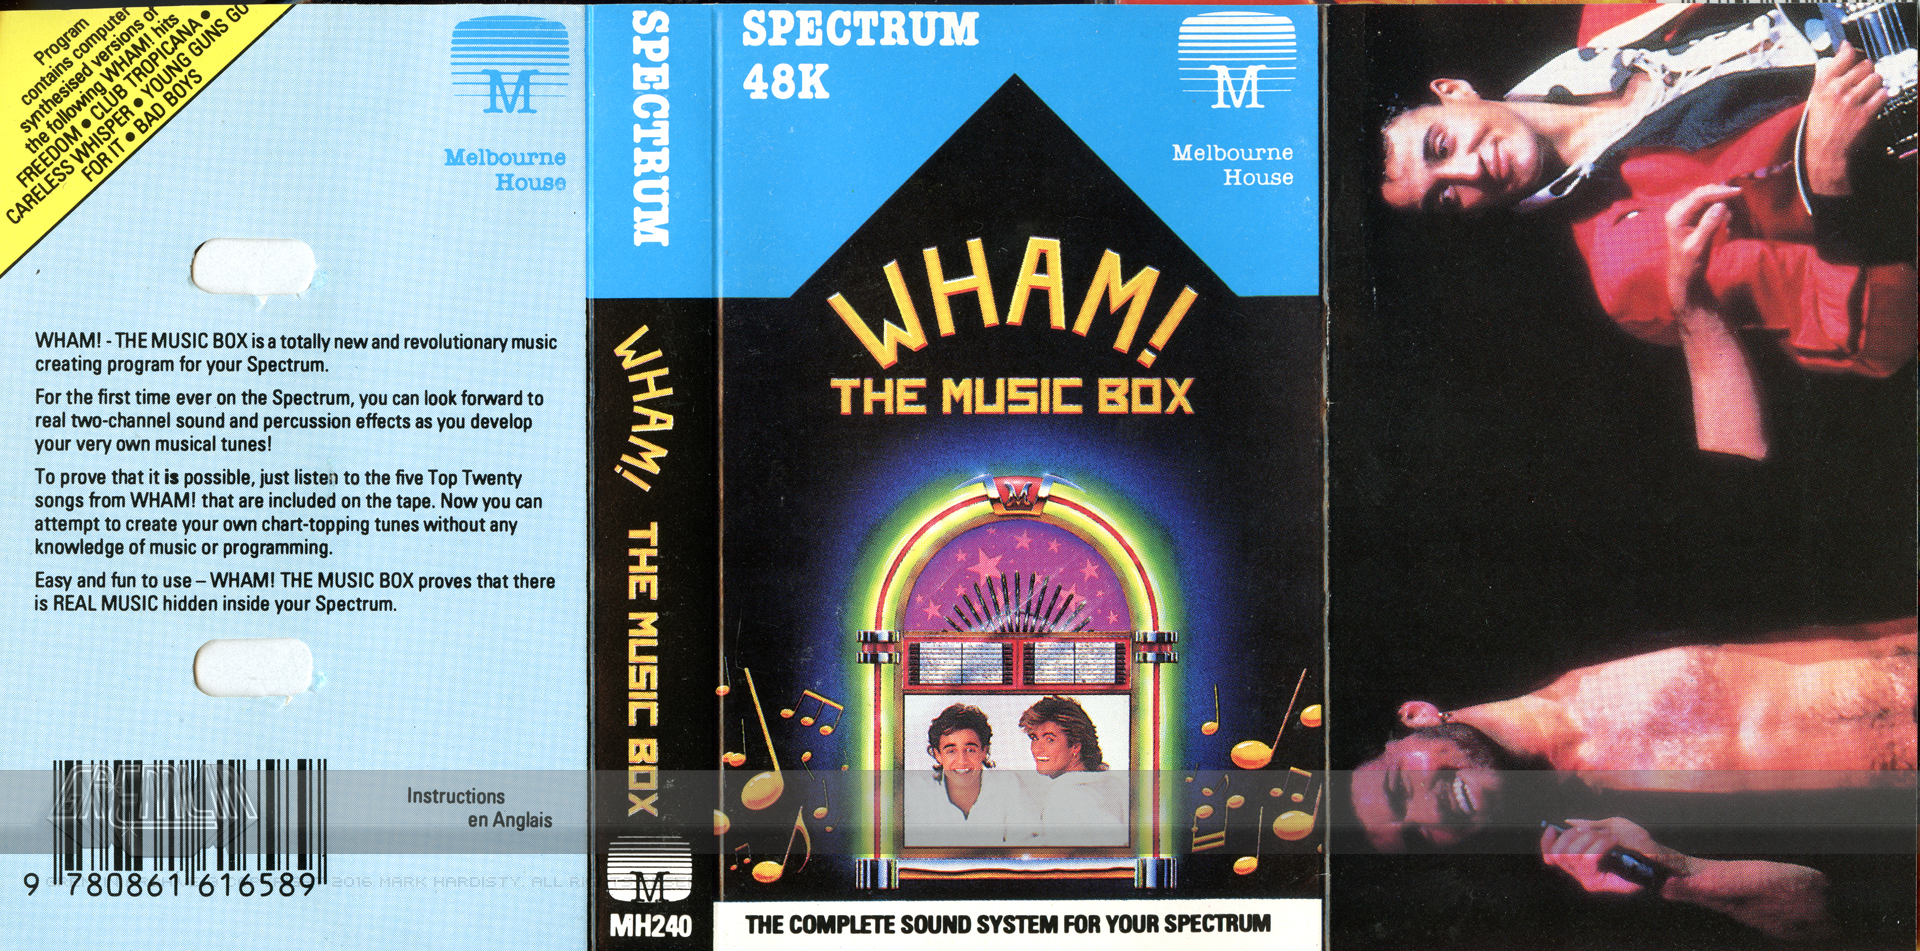 Wham! The Music Box